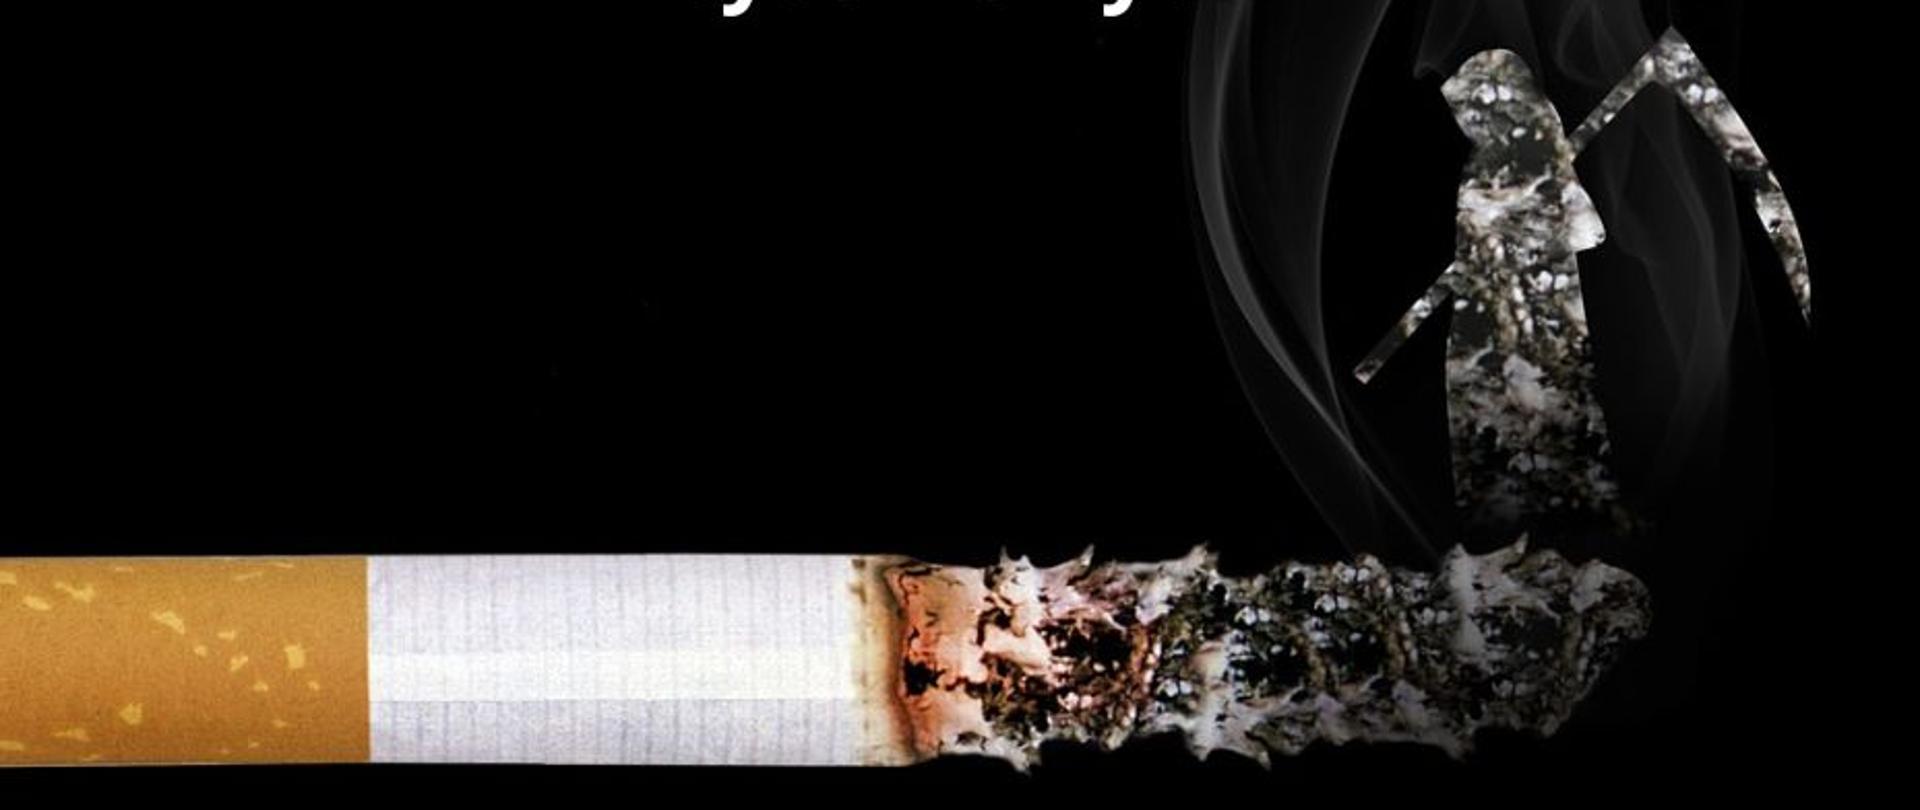 Grafika przedstawia papierosa, na którego żarzącej się końcówce stoi postać z kosą oraz zaproszenie do udziału w konkursie dla uczniów klas 4 realizujących program "Bieg po zdrowie"